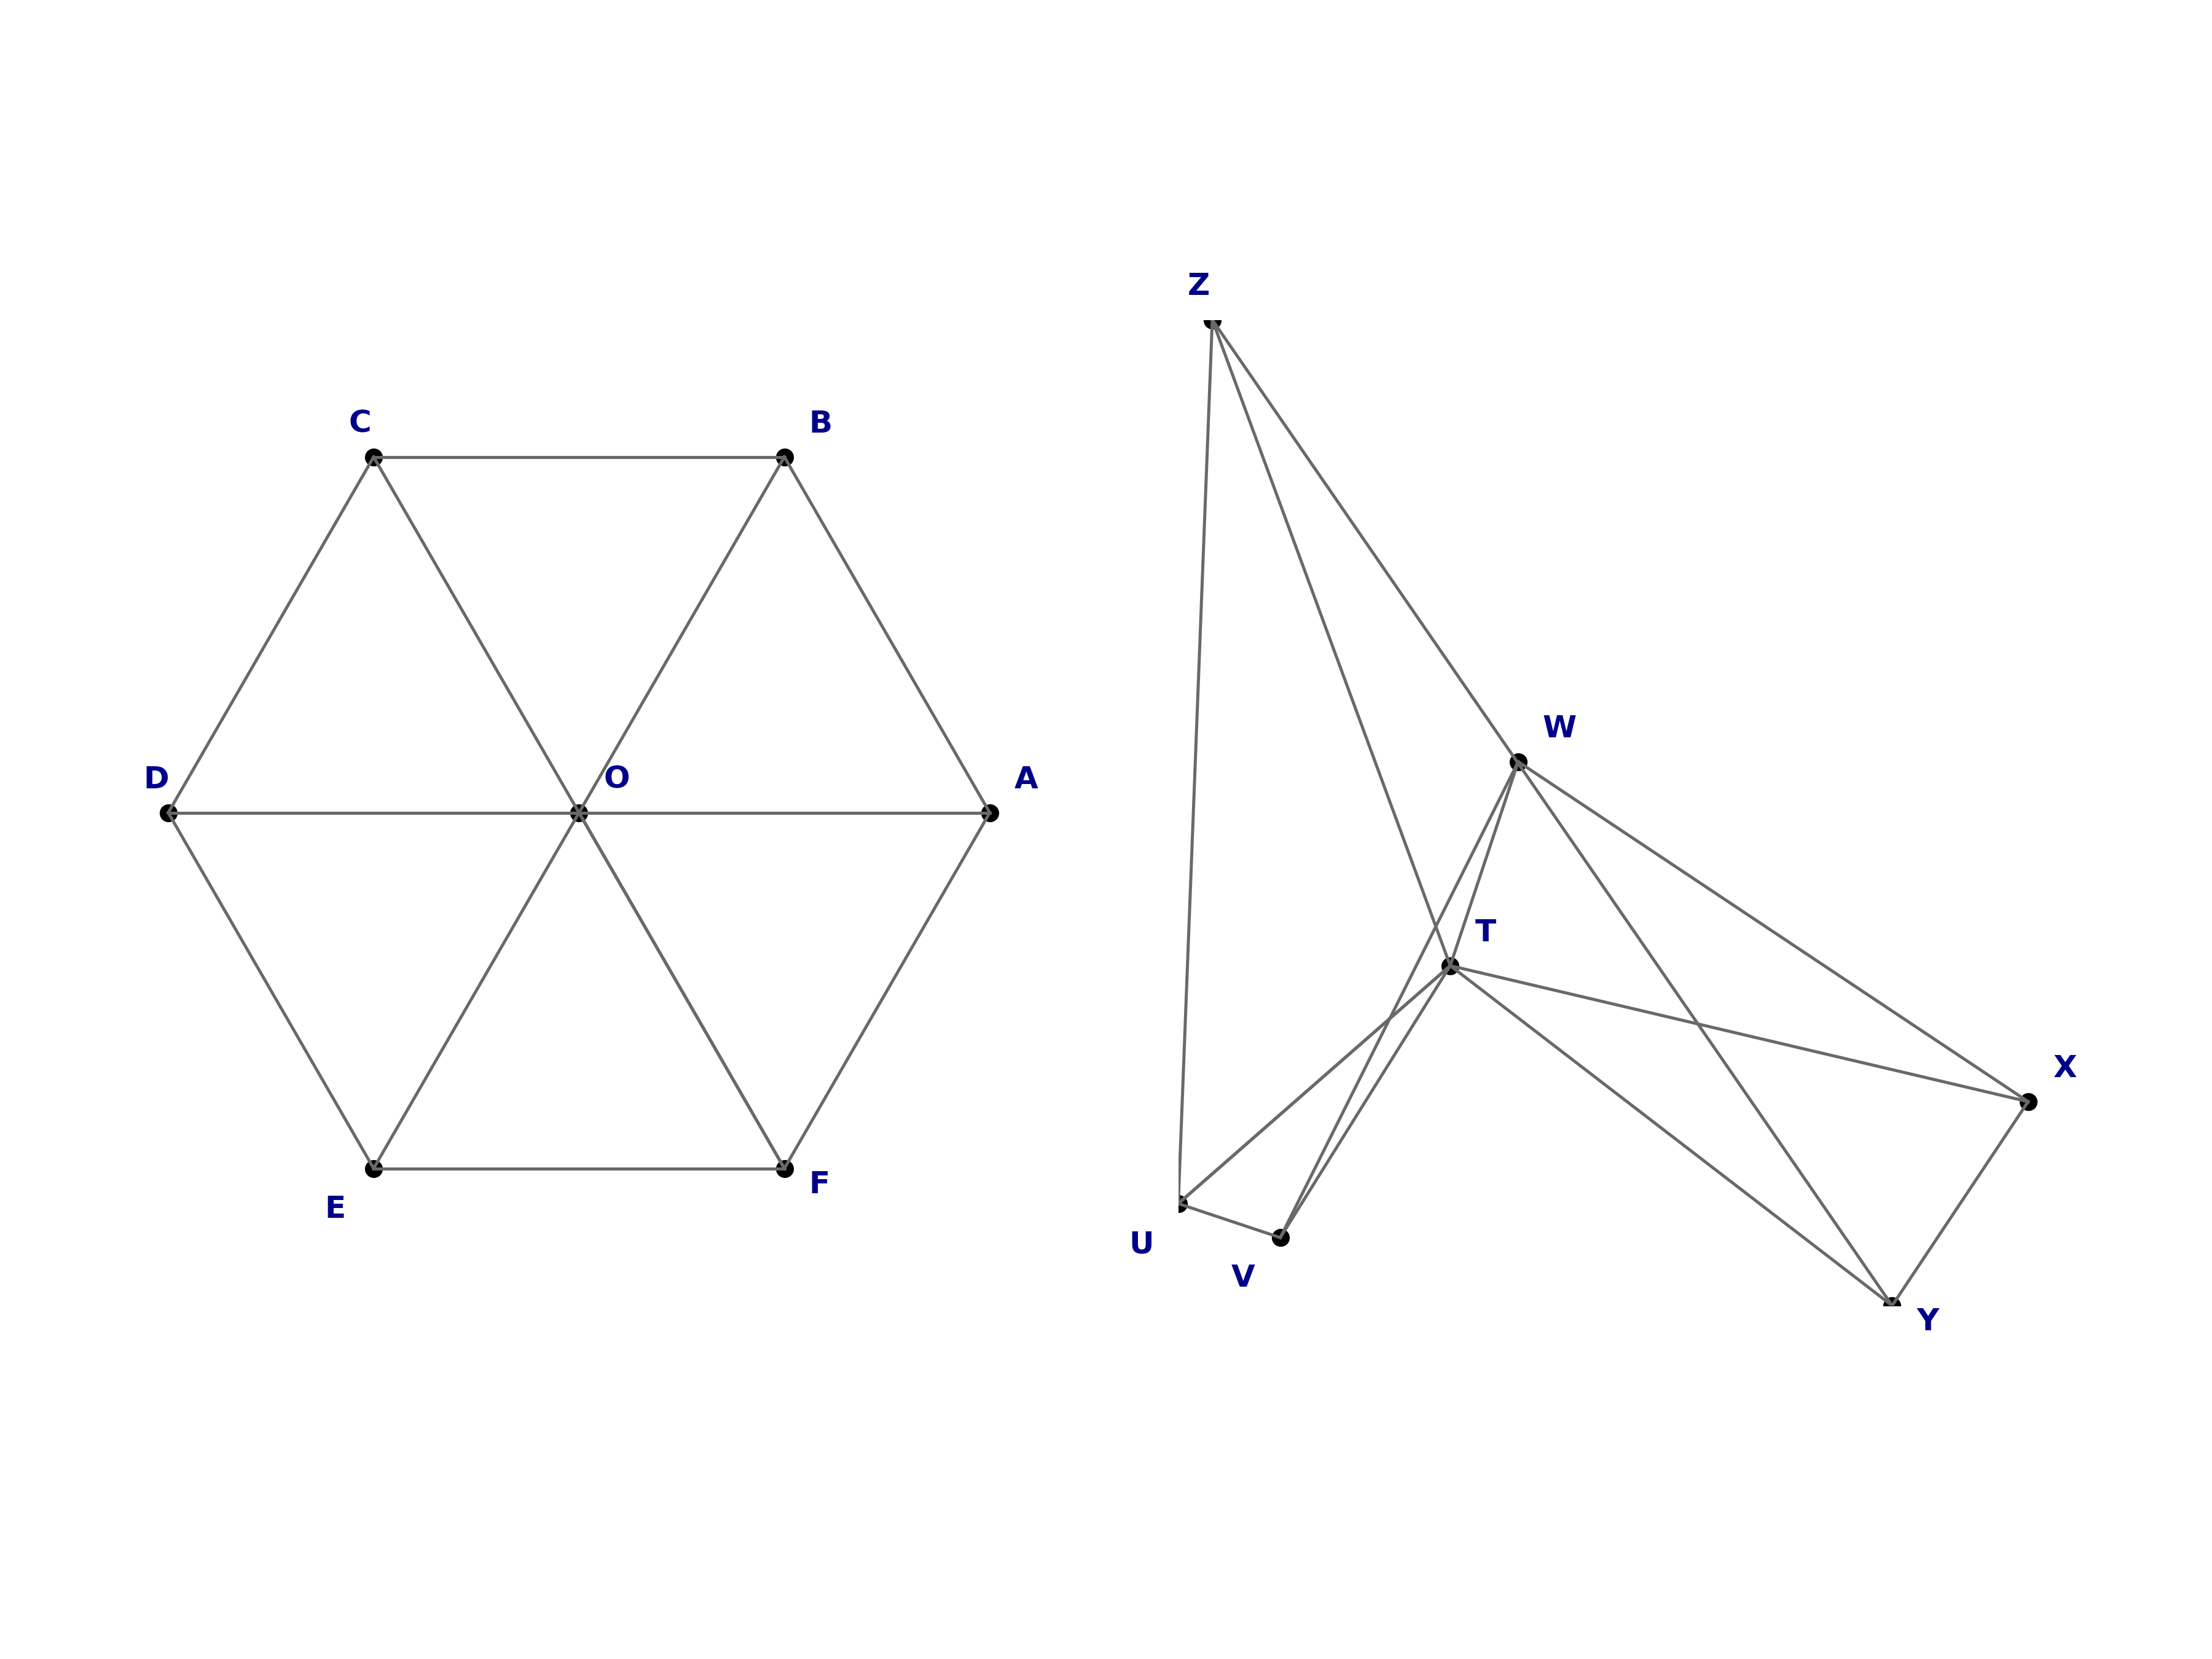 isomorphic graphs